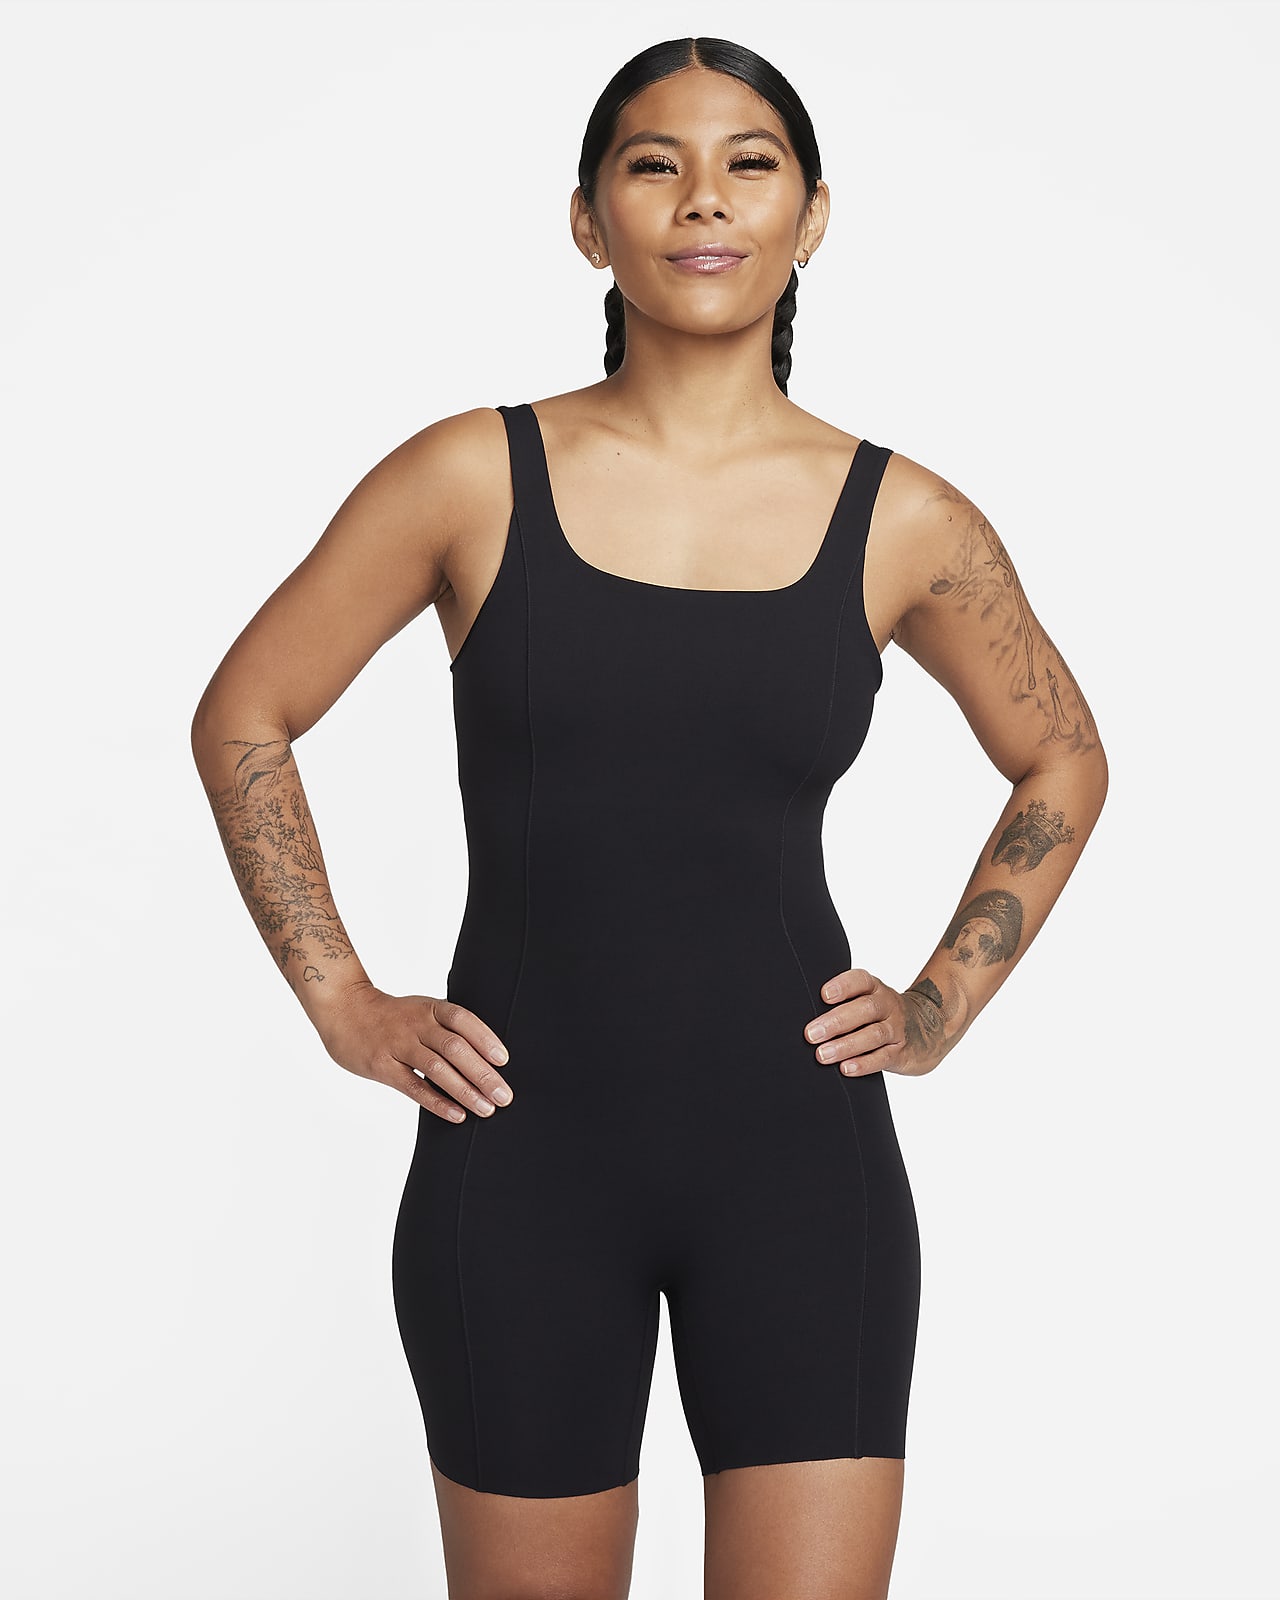 Women's Black Bodysuits, Explore our New Arrivals